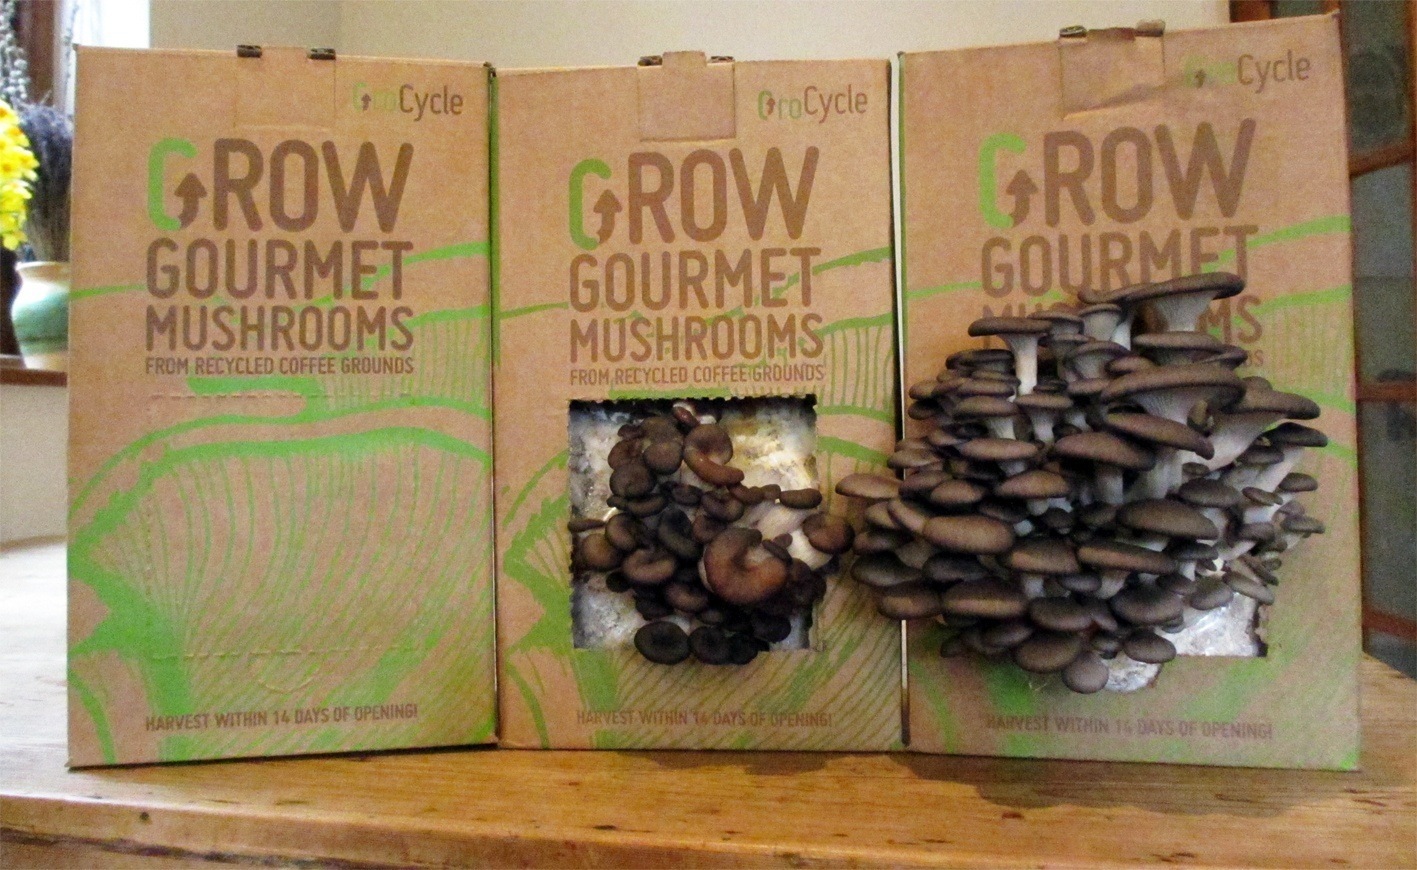 grocycle mushrooms